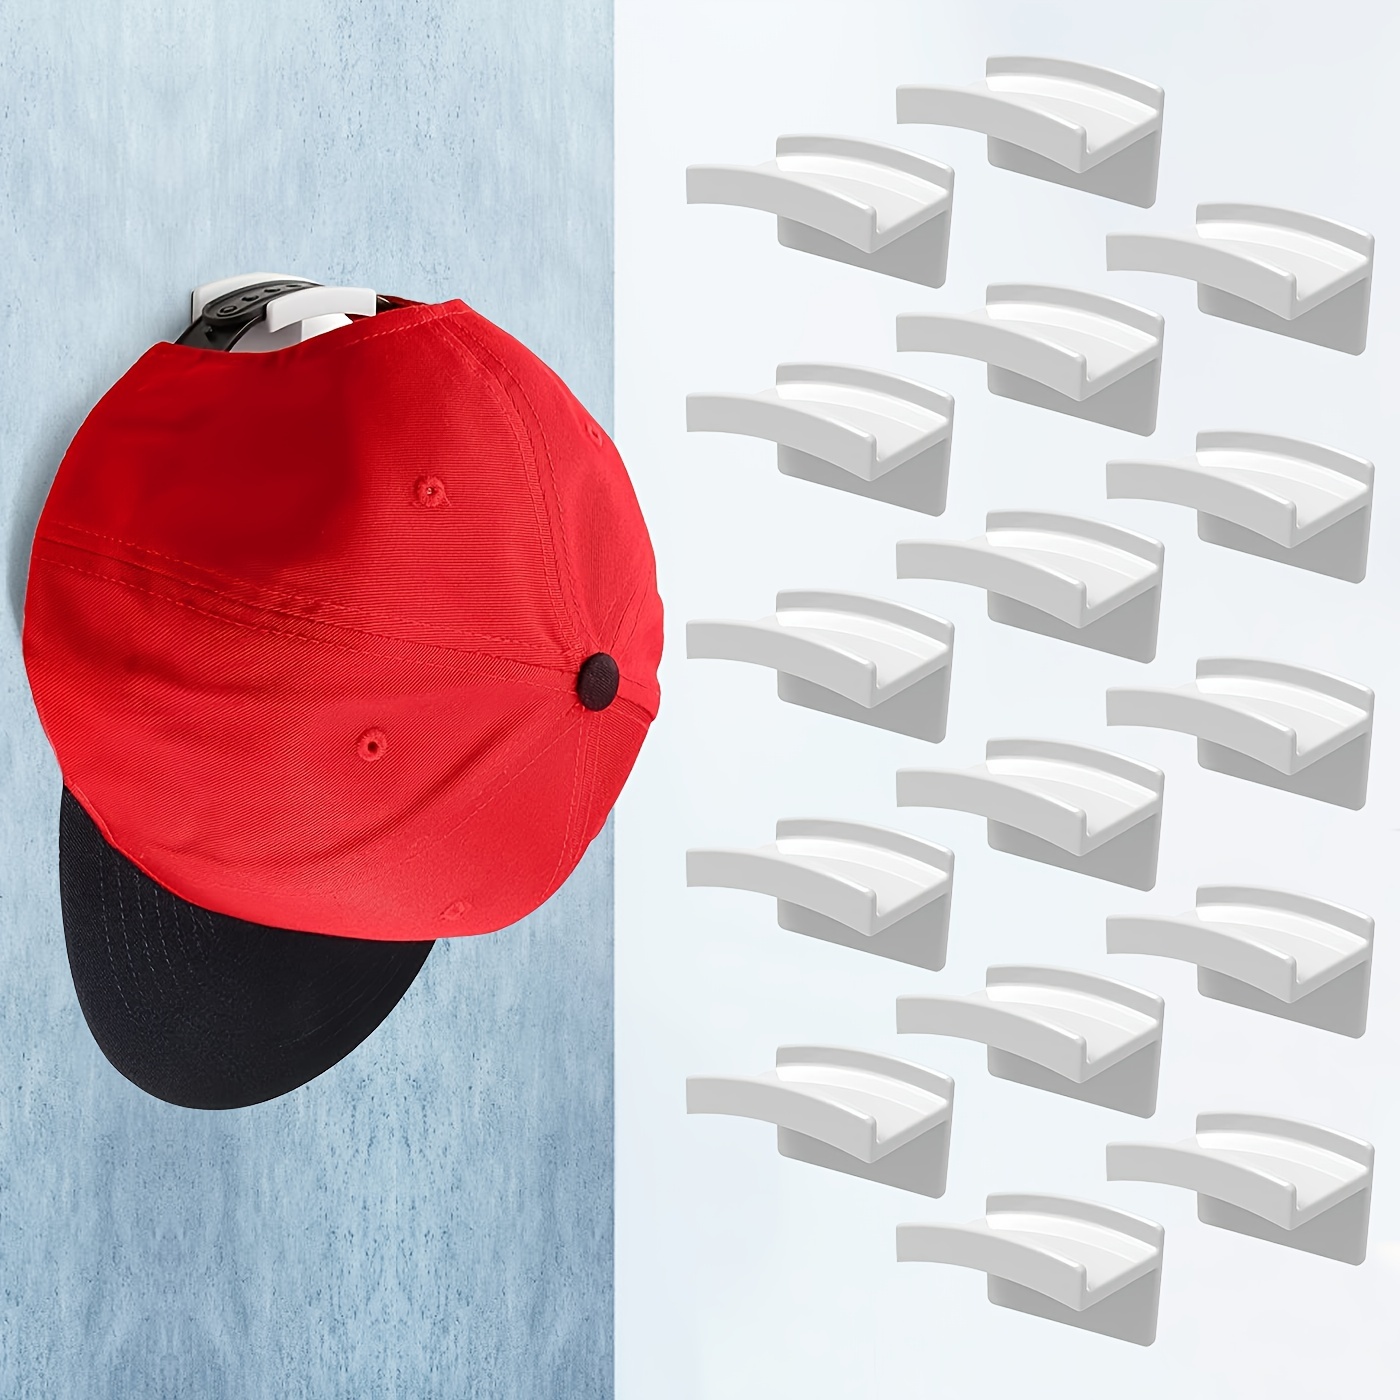 16 Stück/set Selbstklebende Huthaken Für Die Wand – Einfaches  Huthalter-design, Kein Bohren Erforderlich, Stabiler Hutaufhänger, Kostenloser Versand Für Neue Benutzer